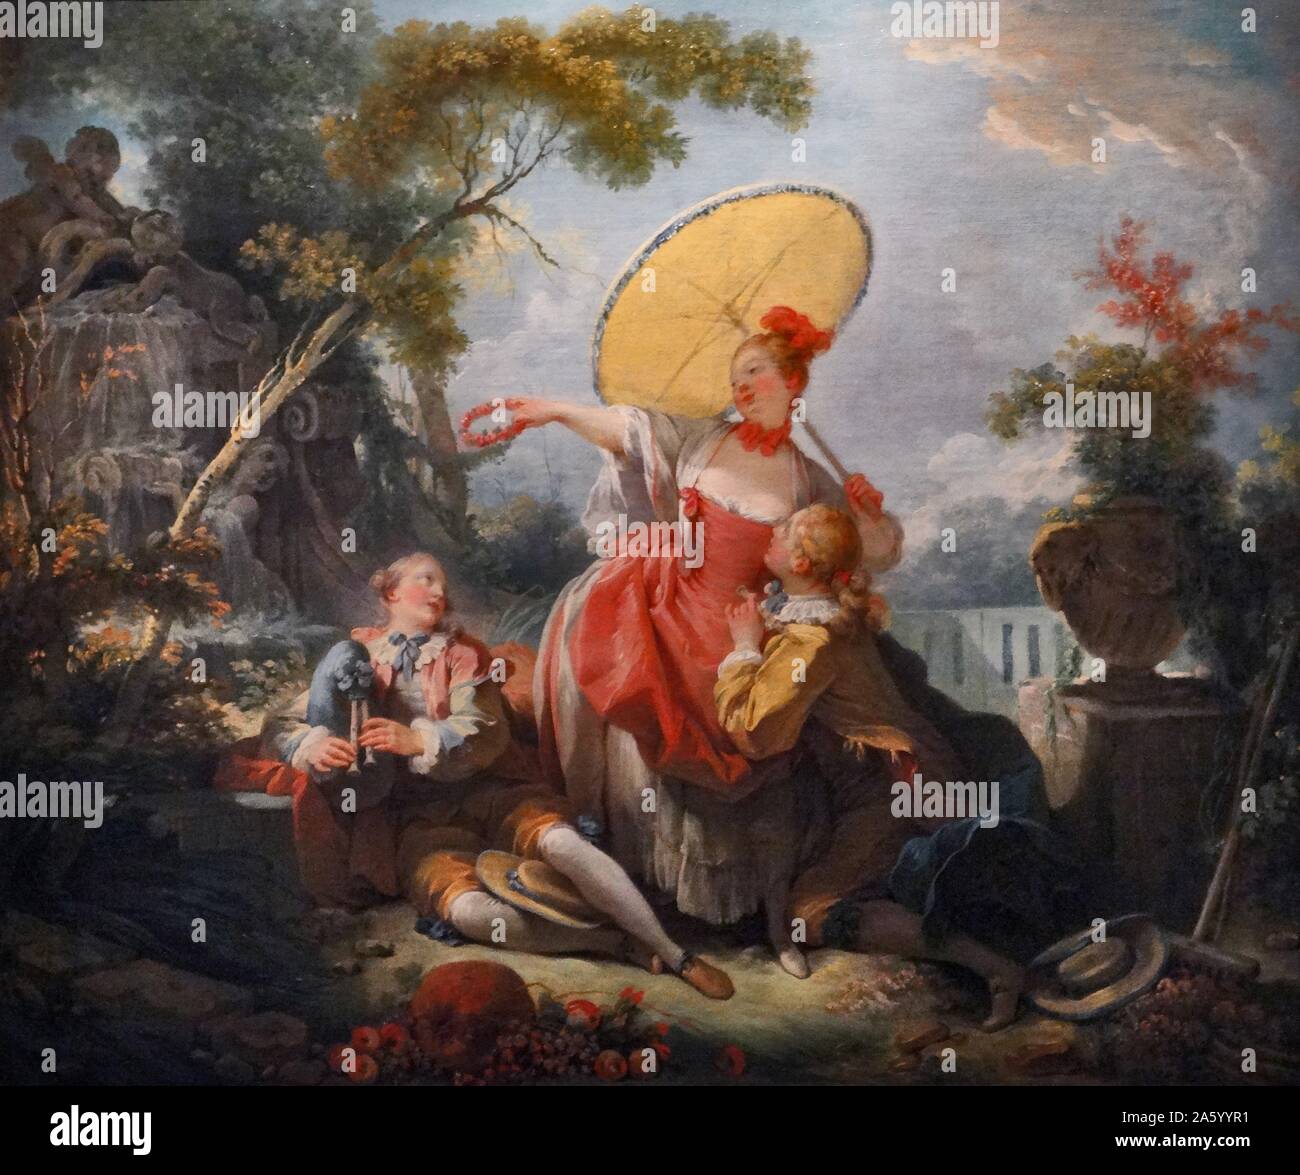 Gemälde mit dem Titel "The Musical Contest" von Jean-Honoré Fragonard (1732-1806), französischer Maler und Grafiker der Rococo Art und Weise. Vom 18. Jahrhundert Stockfoto